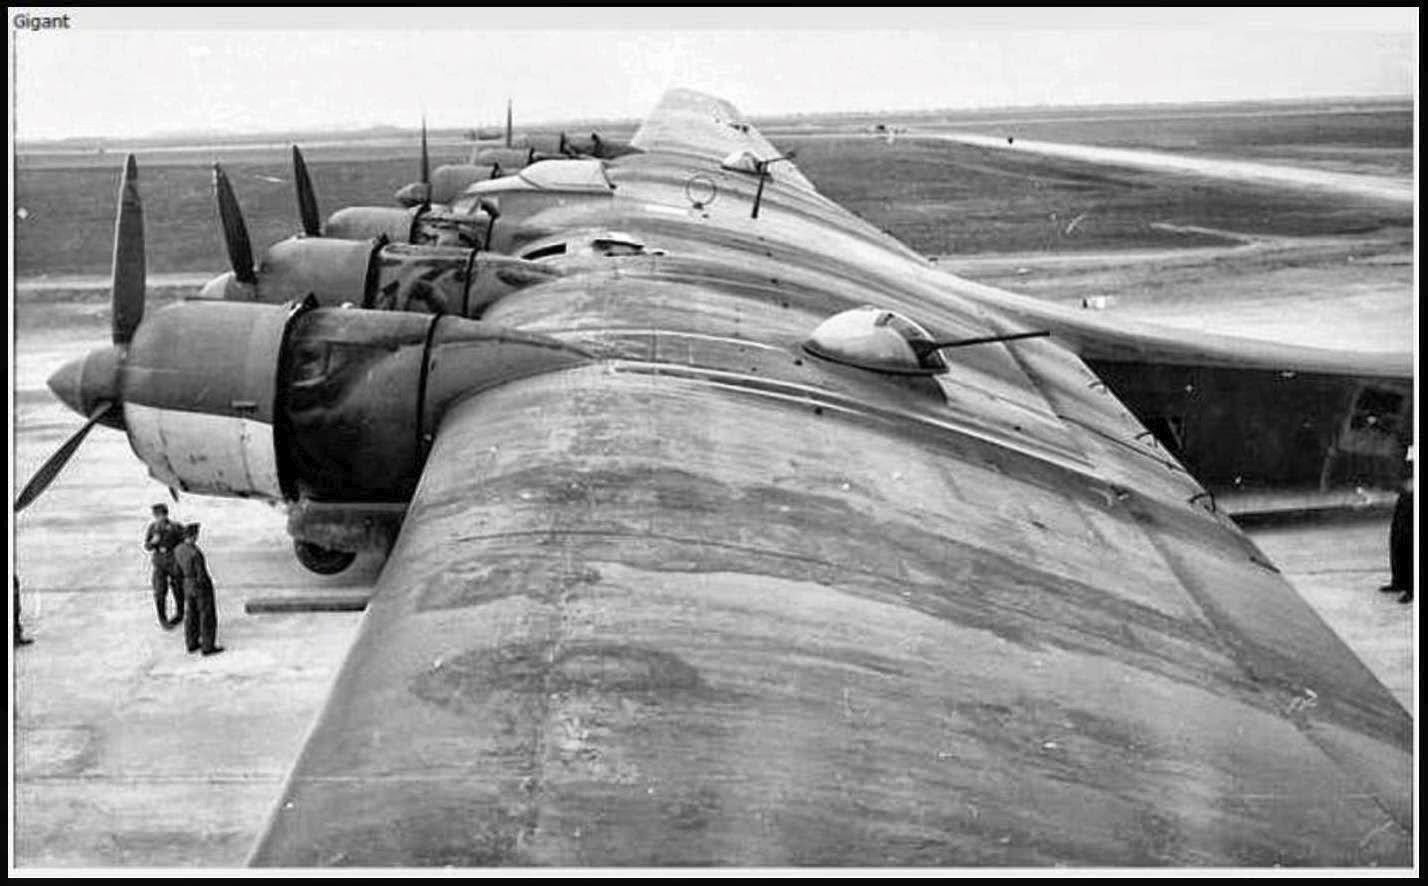 Luftwaffe%2Baircraft%2B-%2BMesserschmitt